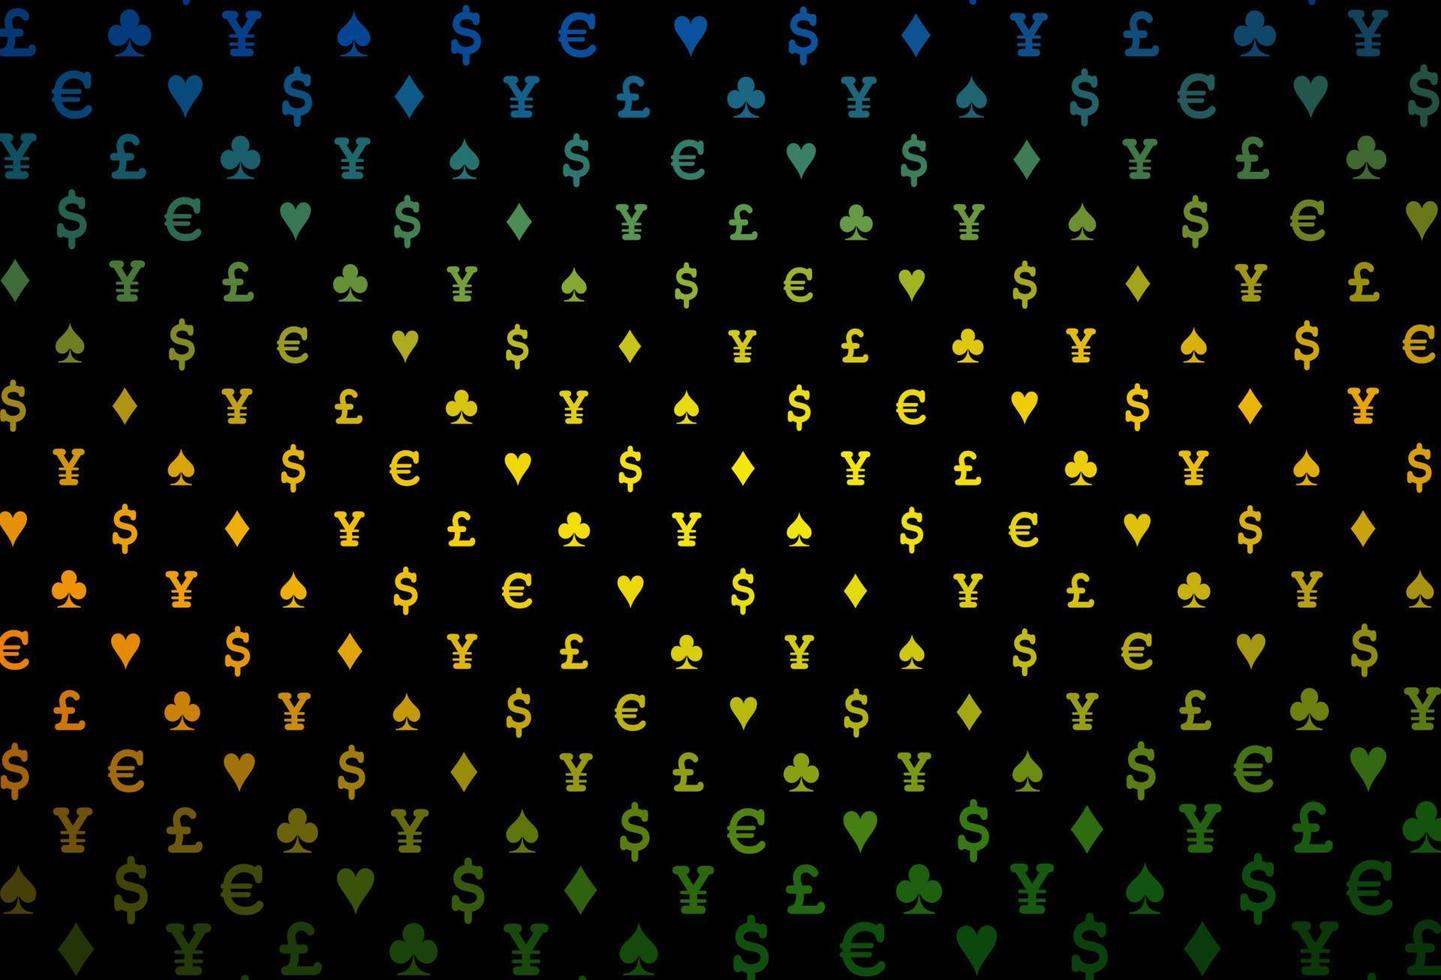 dunkle mehrfarbige, regenbogenfarbene Vektortextur mit Spielkarten. vektor